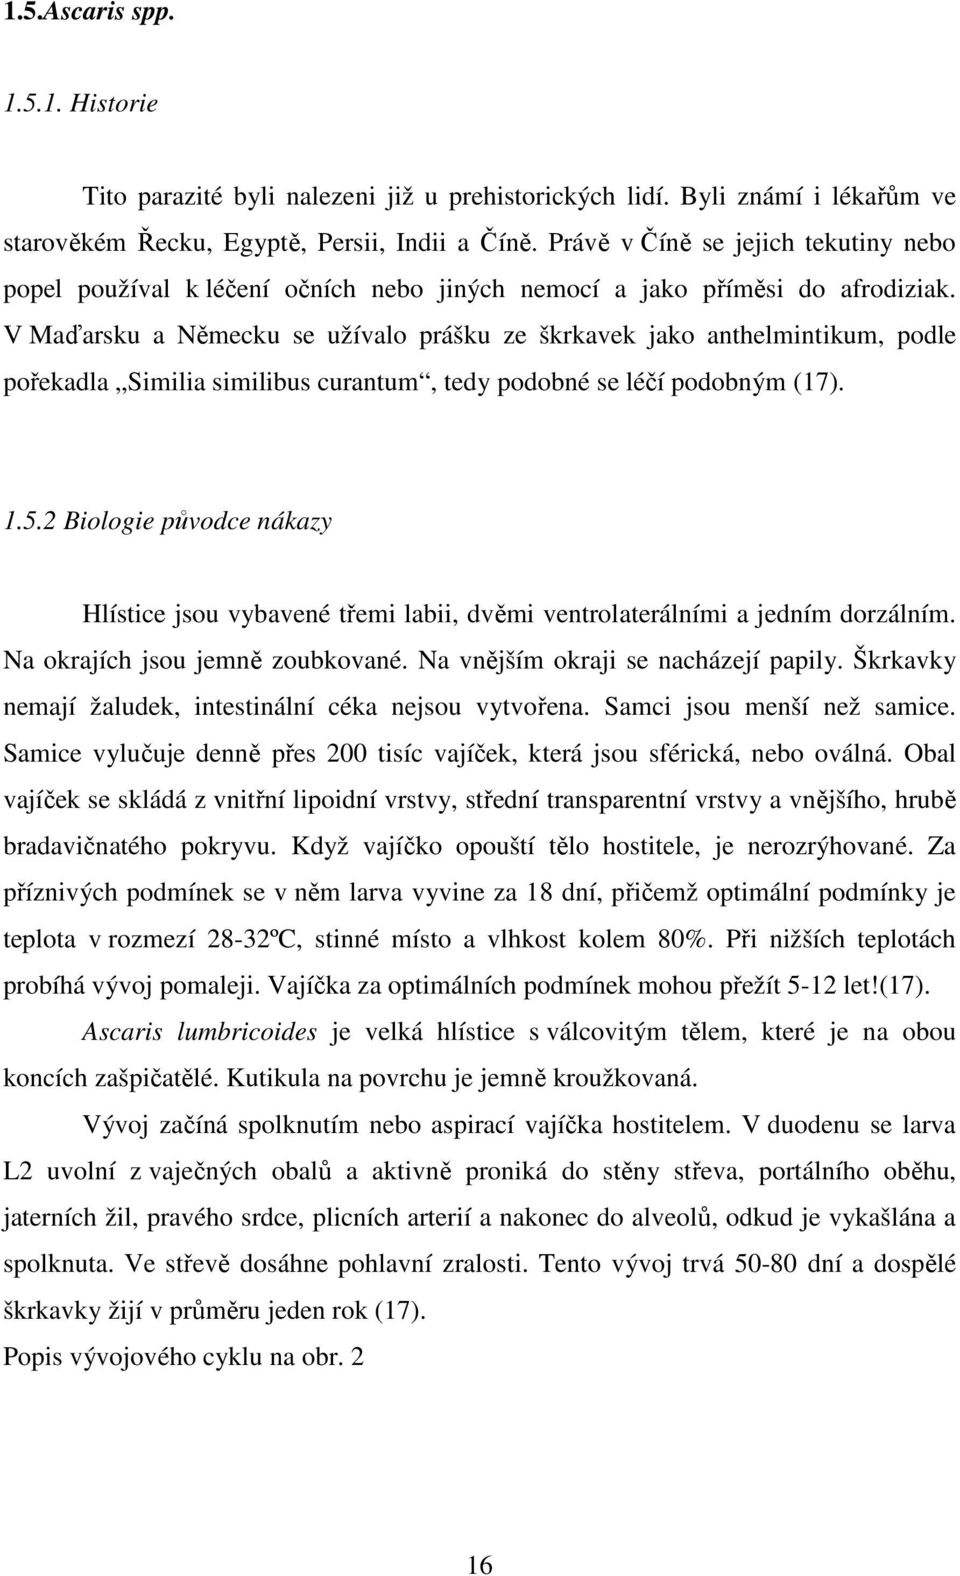 V Maďarsku a Německu se užívalo prášku ze škrkavek jako anthelmintikum, podle pořekadla Similia similibus curantum, tedy podobné se léčí podobným (17). 1.5.